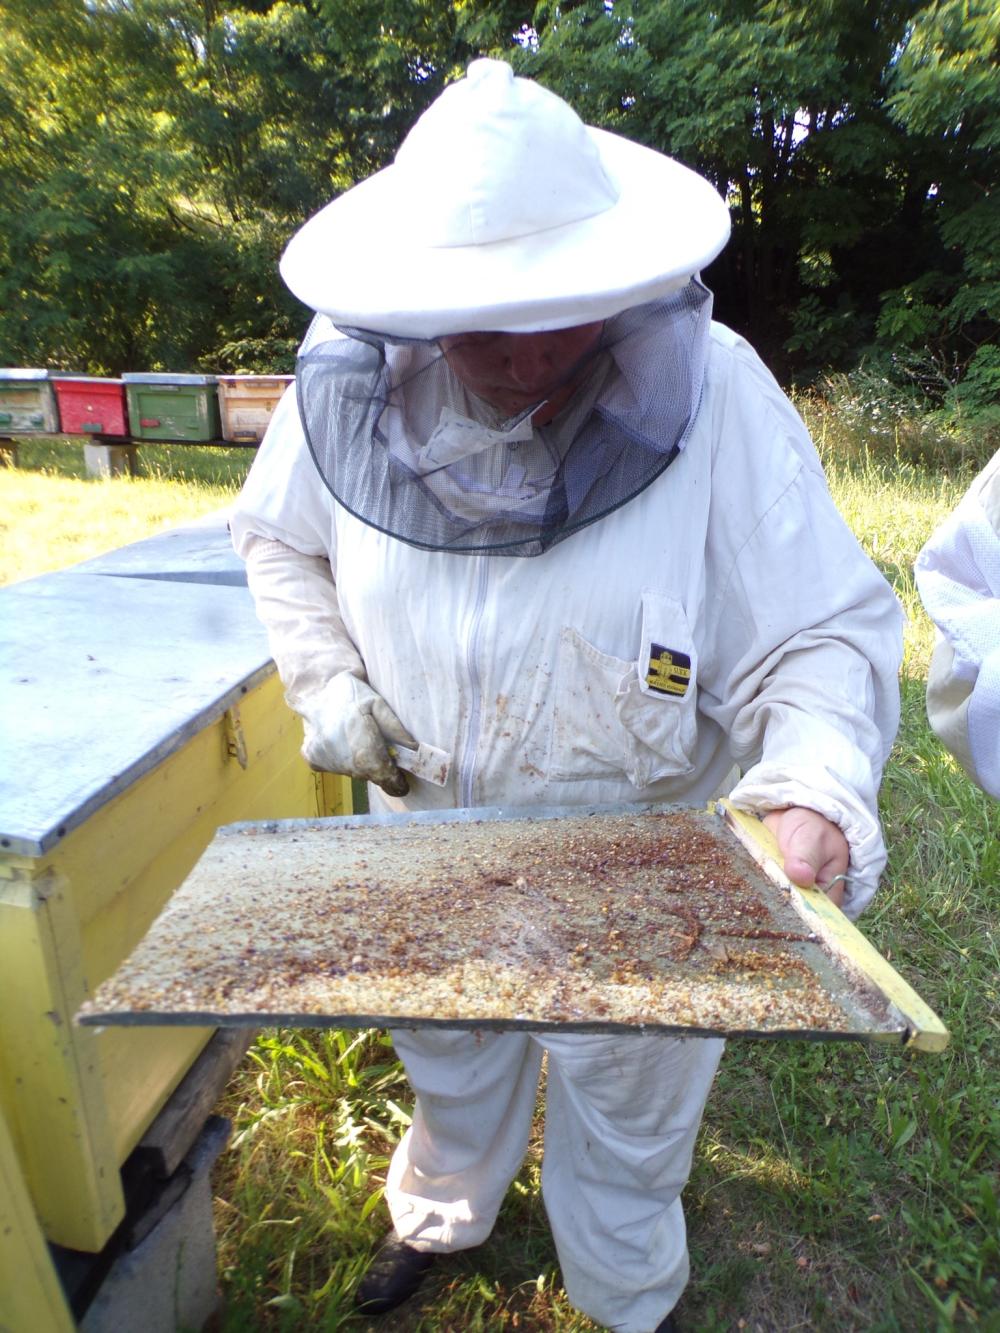 Bakonyi méhésznő  a méhekről: ,,Úgy vagyok a kaptár közelében, mint mások a parfümüzletben